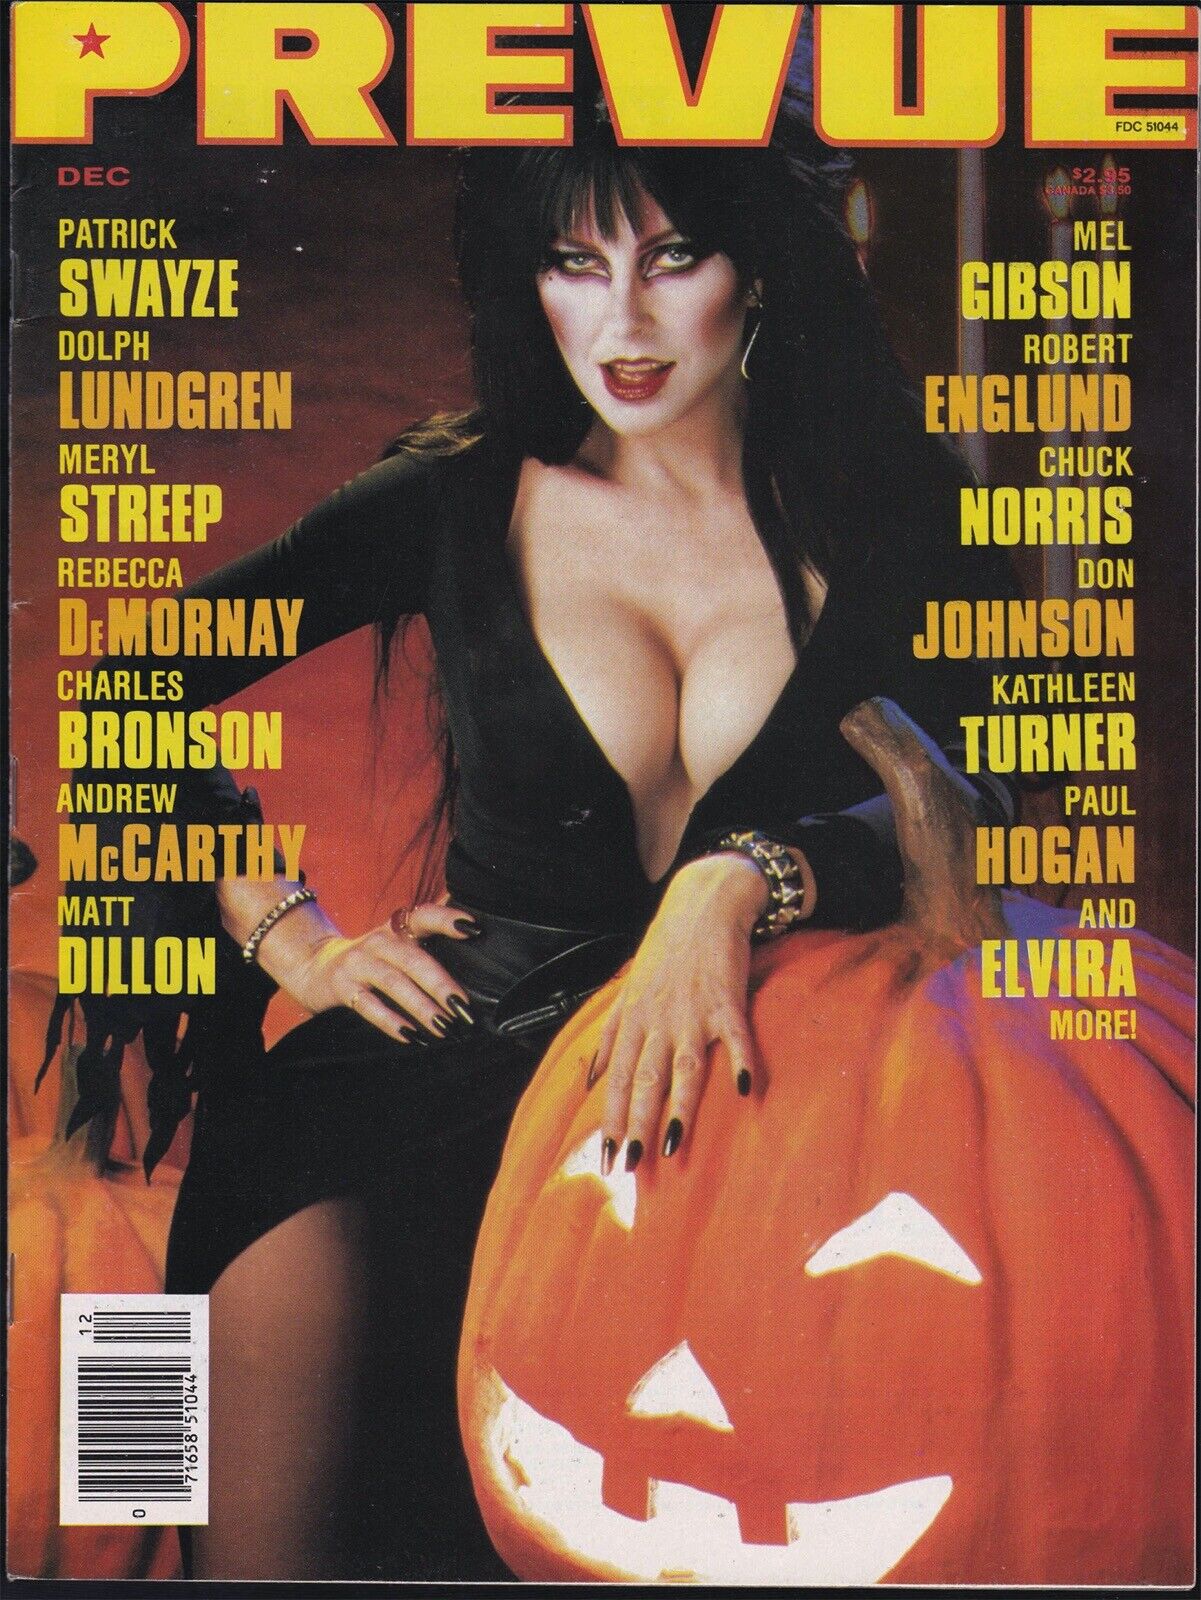 Mediascene PREVUE MAGAZINE December 1988 Elvira Cover VF-